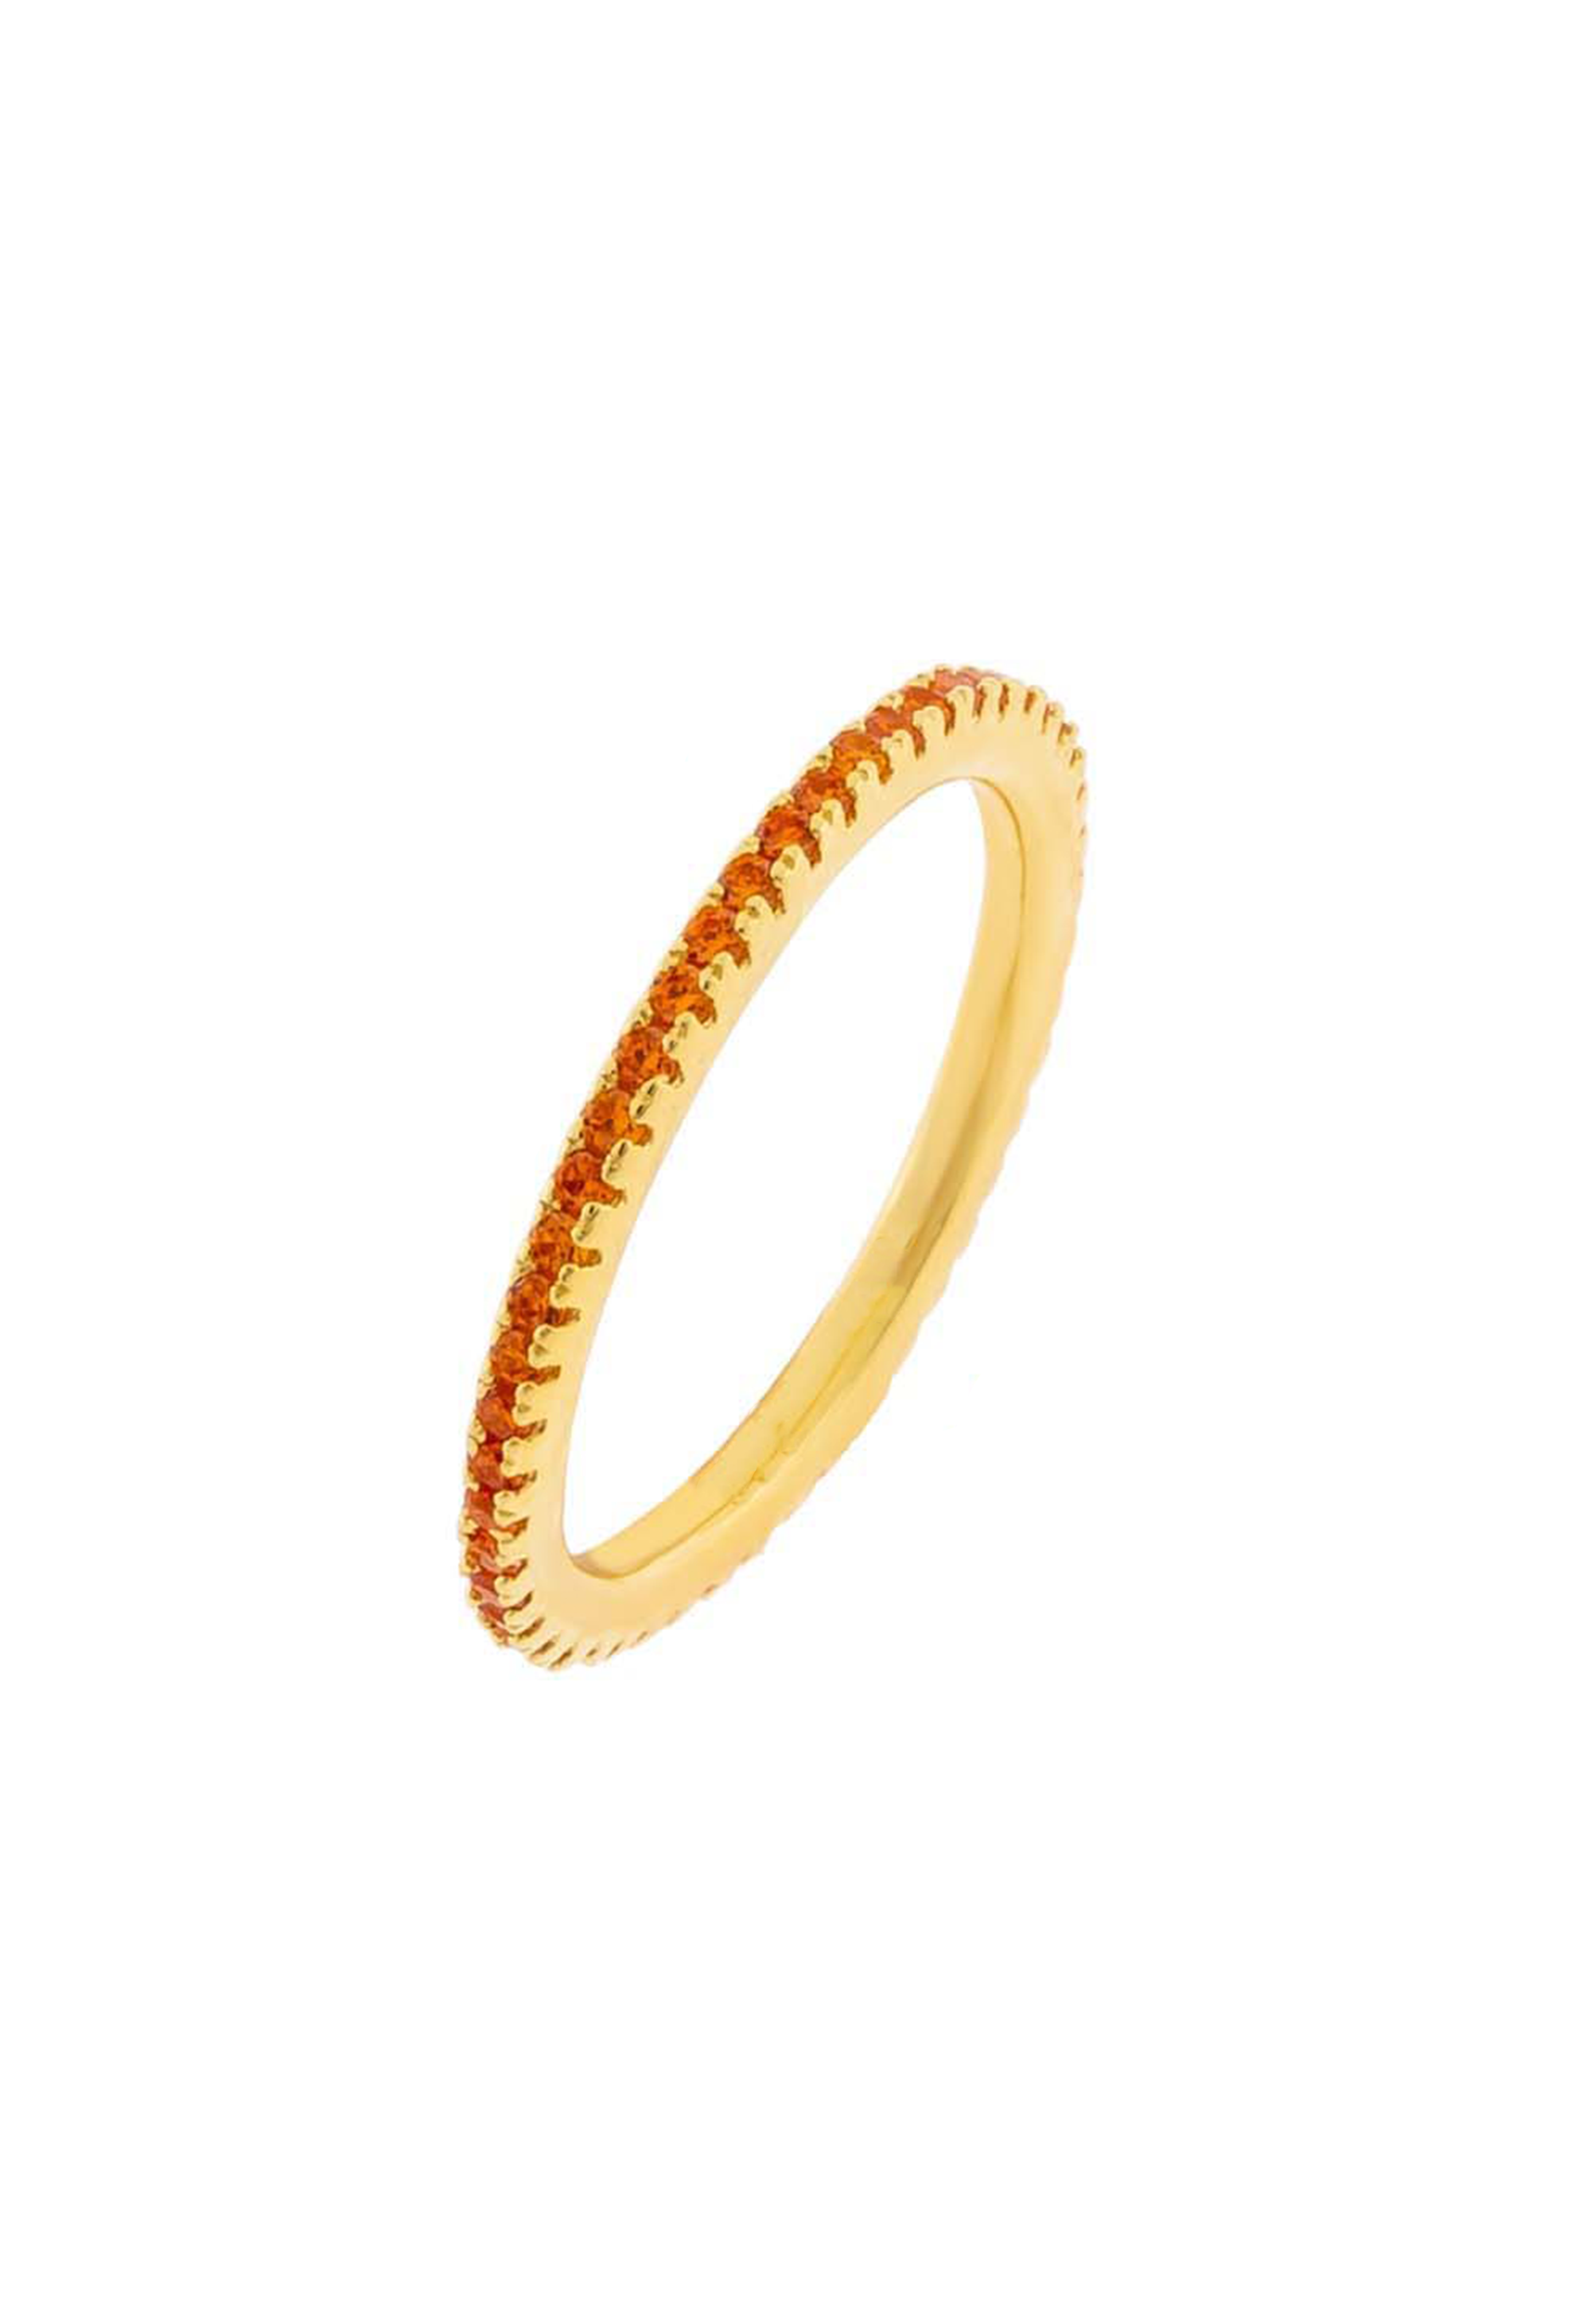 Hart Ring (Orange) - Gold Vermeil - KESTAN